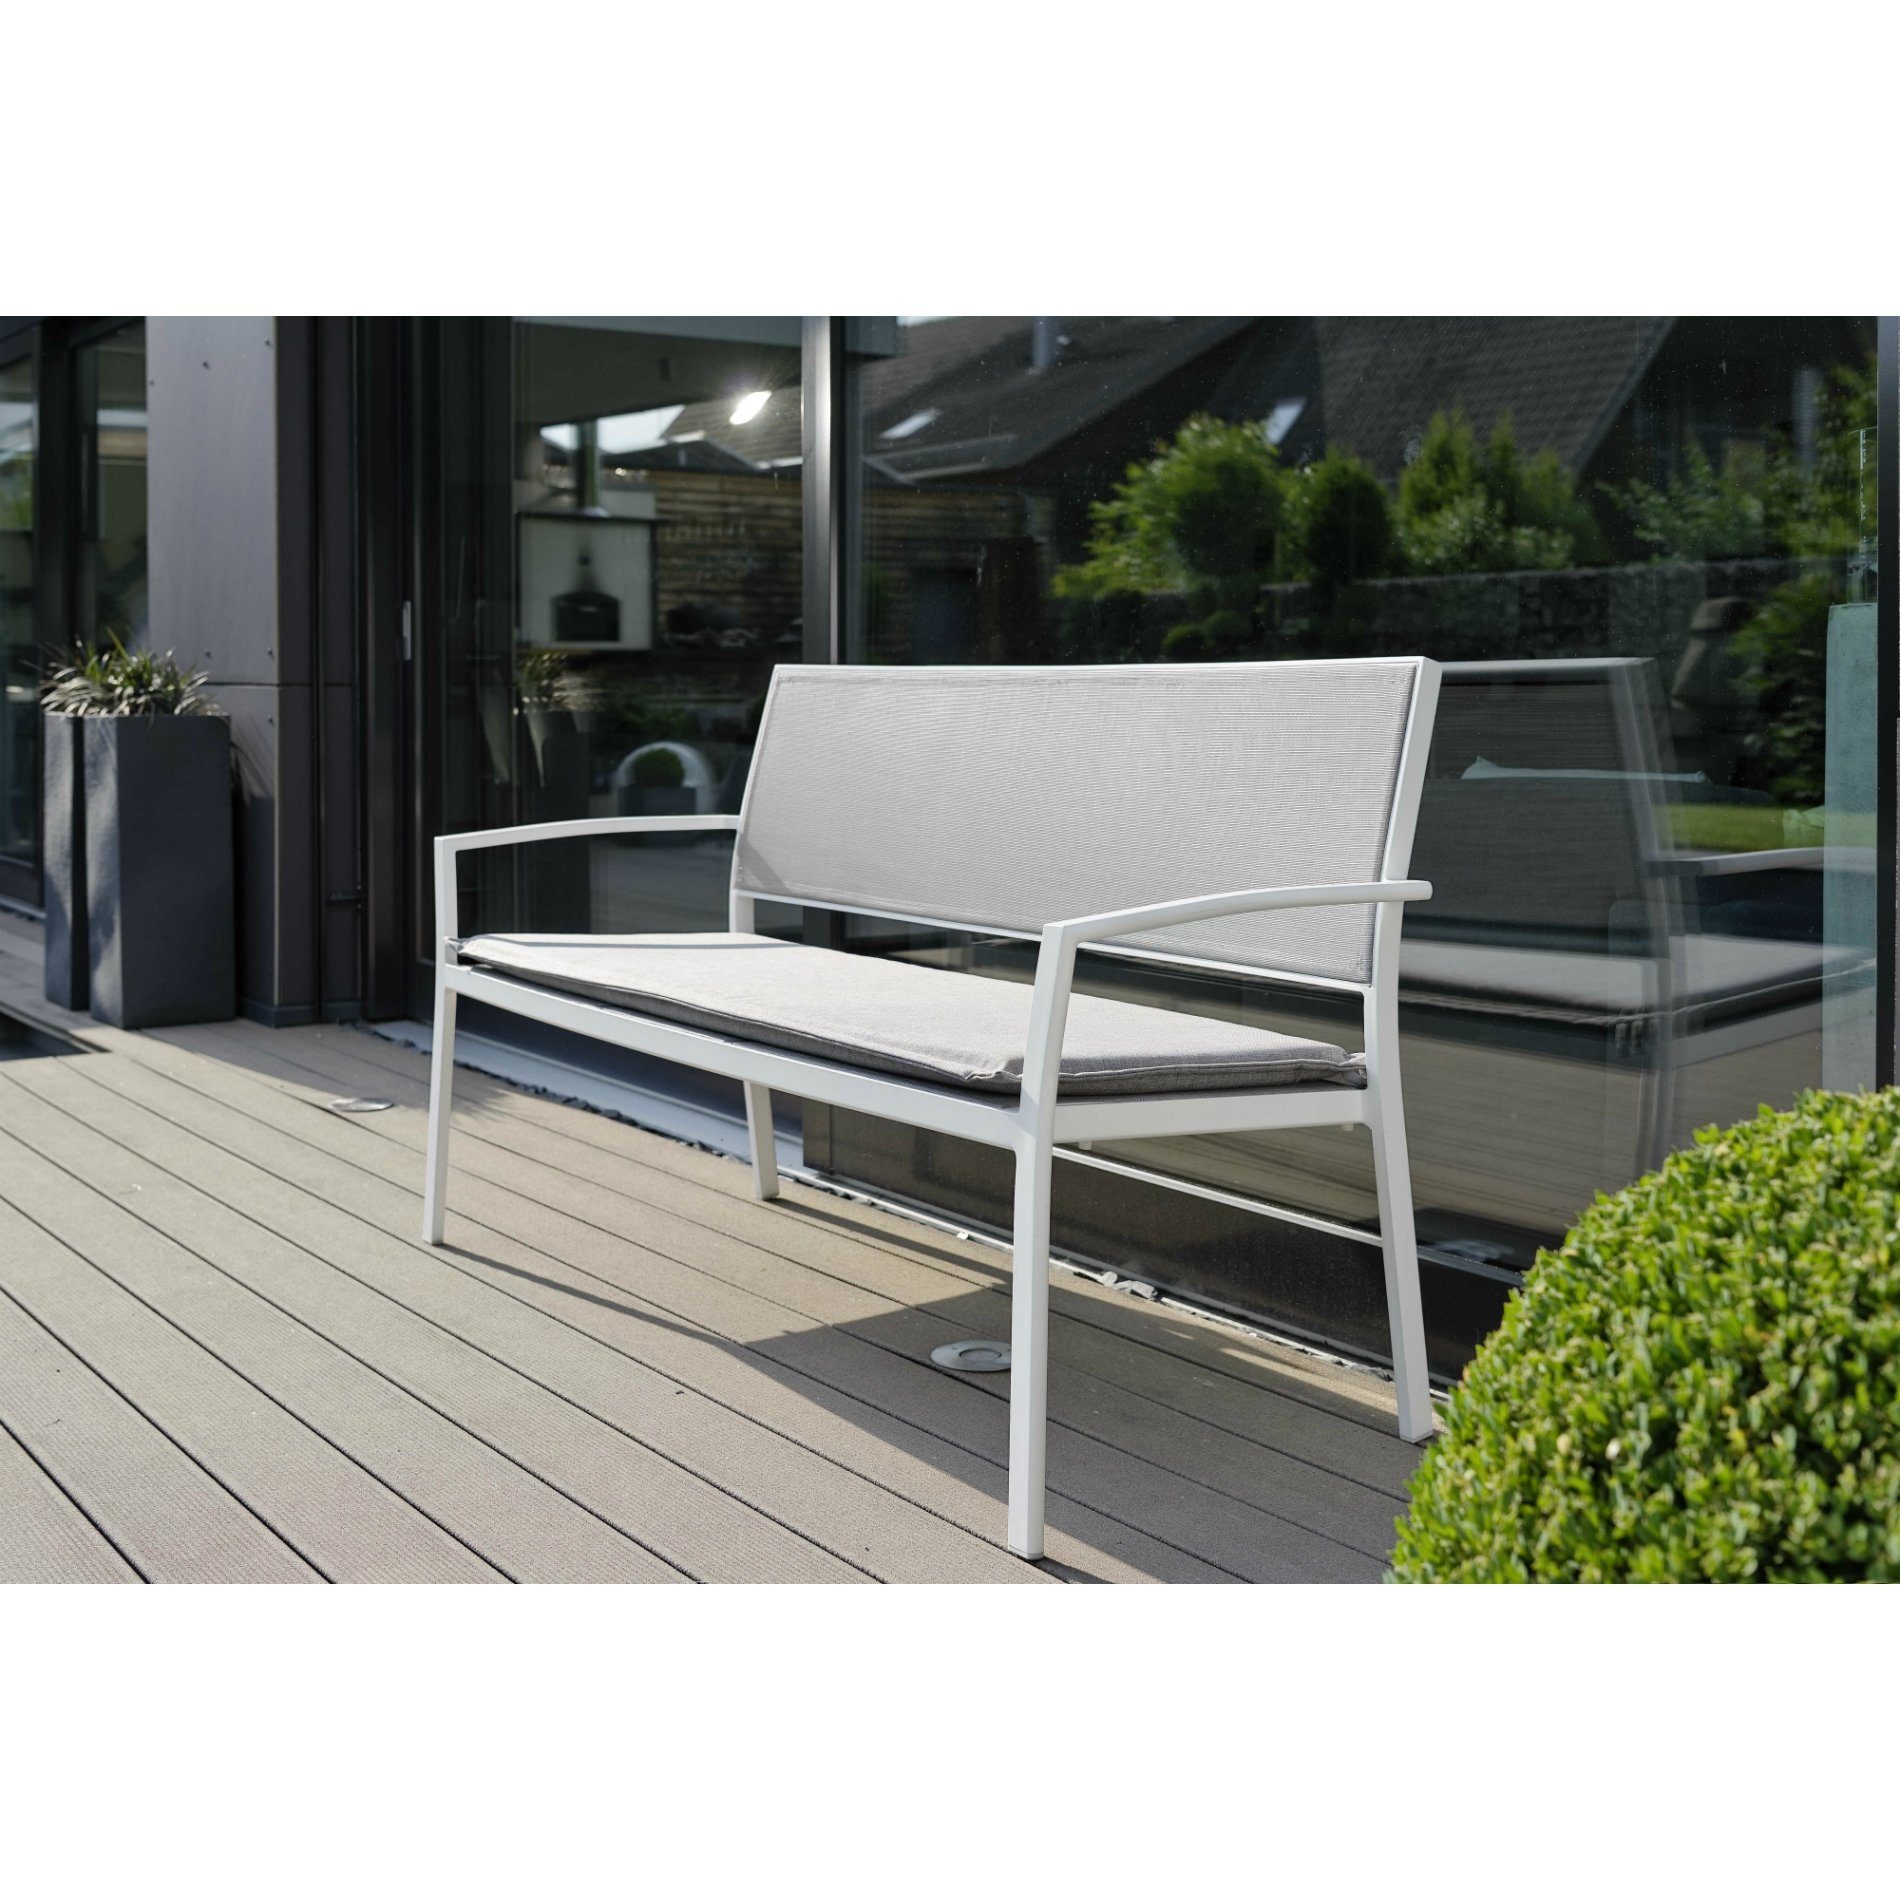 Stern Gartenbank "Allround", Gestell Aluminium weiß, Sitz- und Rückenfläche Textilgewebe silber, Auflage separat erhältlich